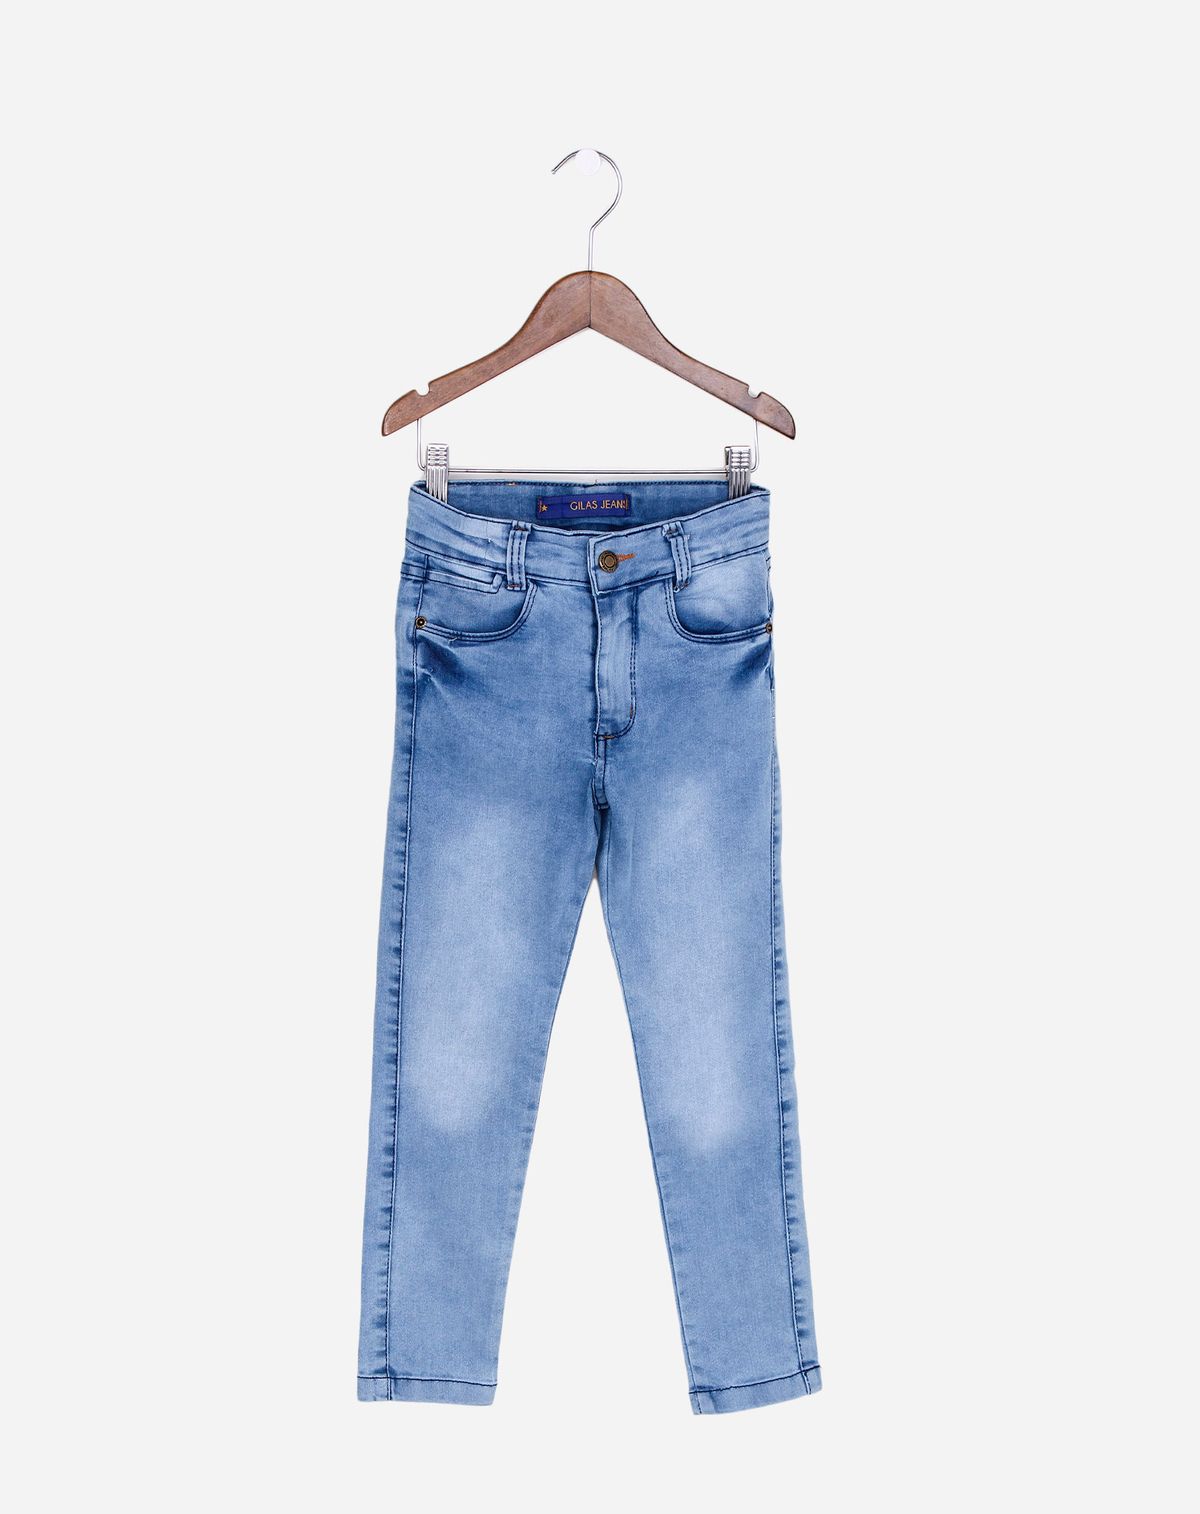 703260001-calca-jeans-skinny-infantil-menino-jeans-4-fdb